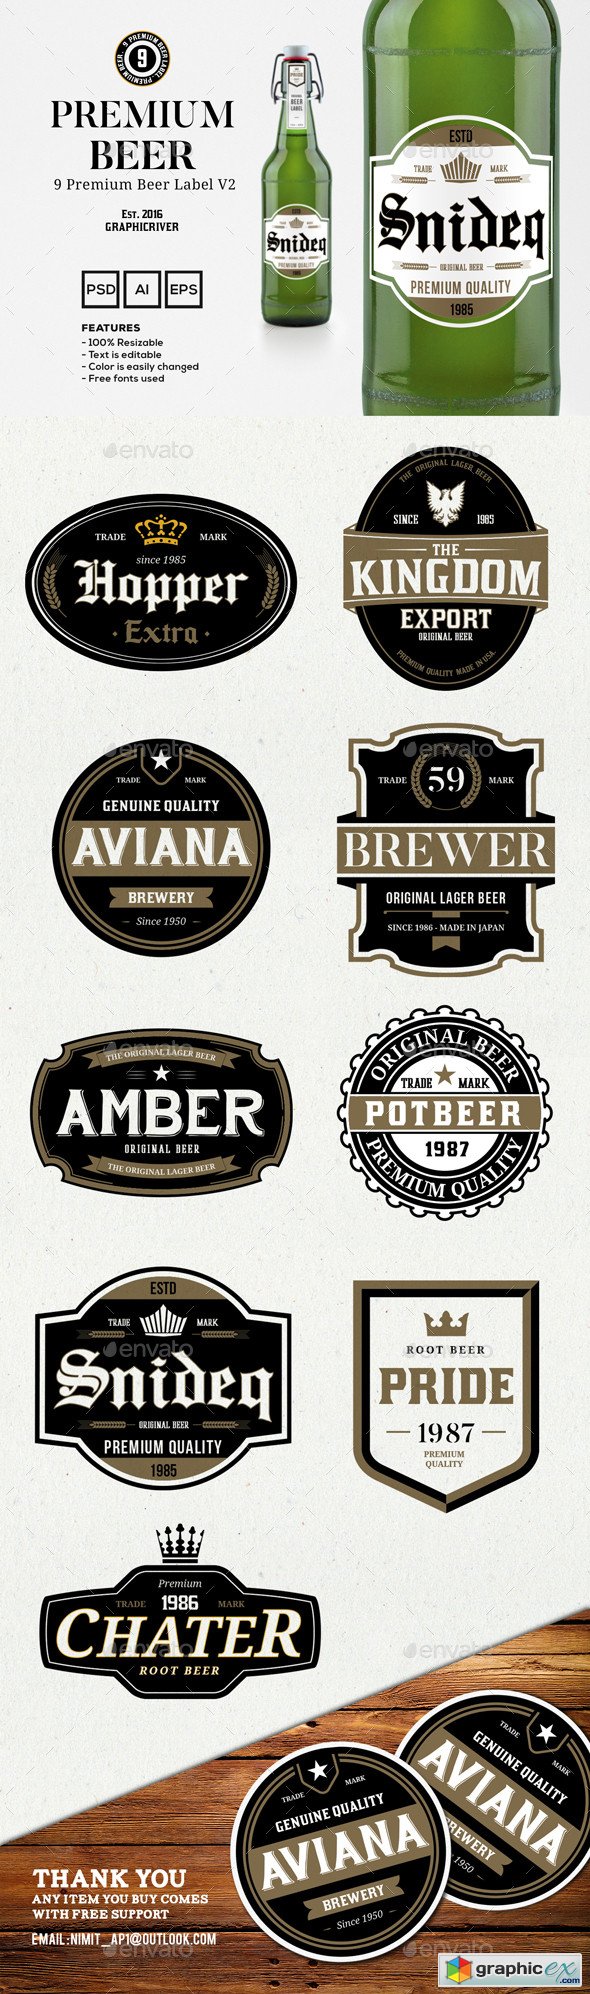 9 Premium Beer Labels V2